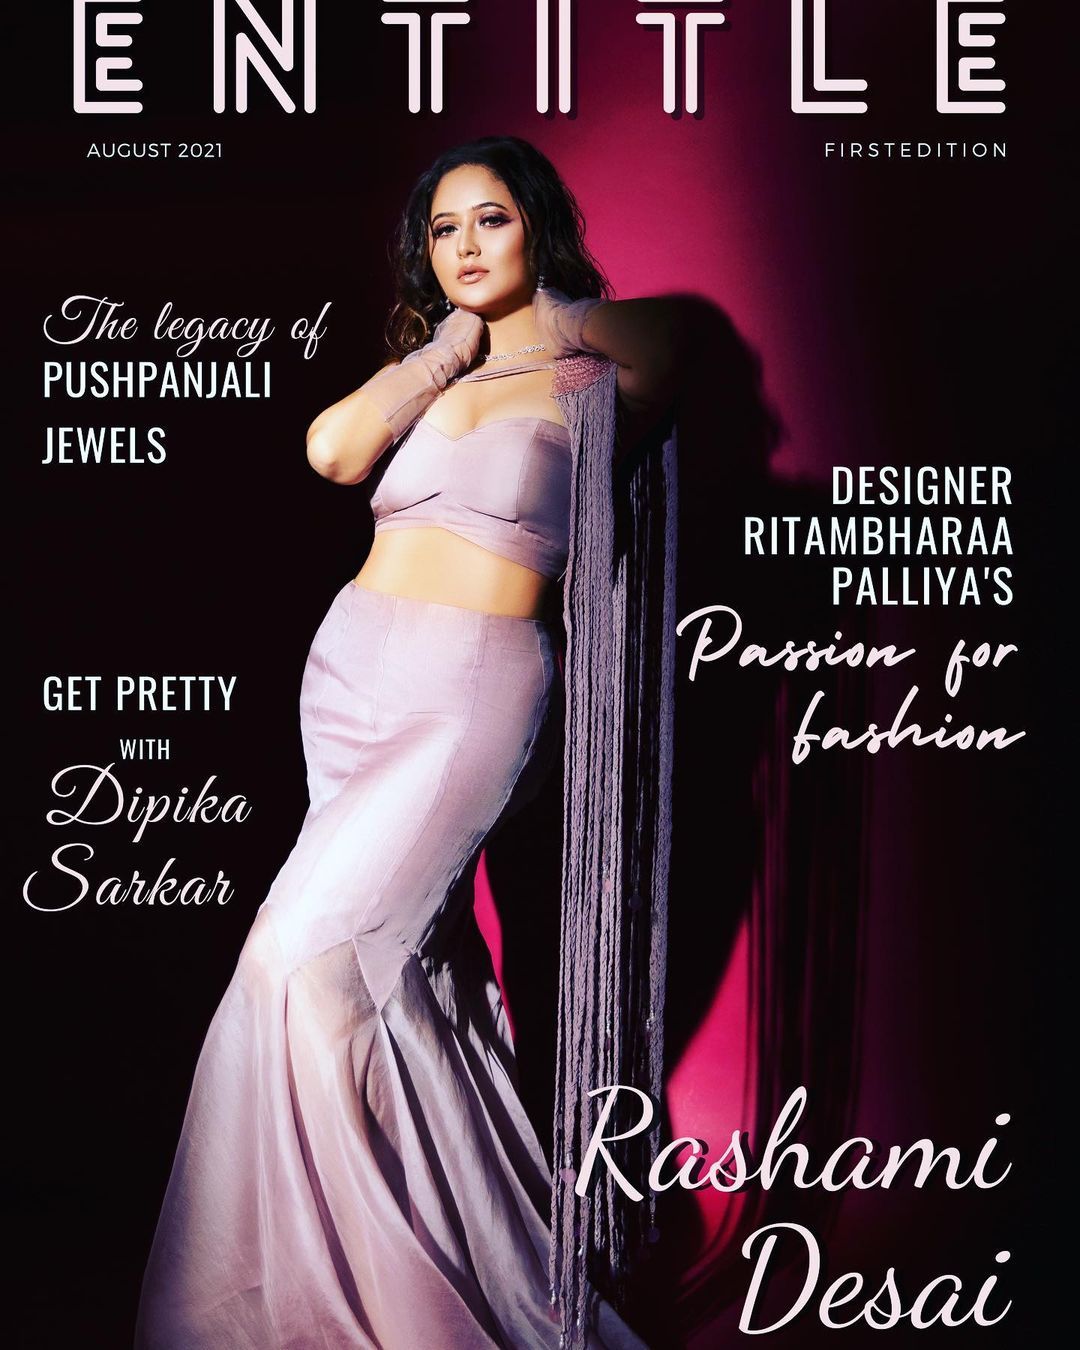 Rashami Desai tampil sebagai cover majalah ENTITLE.